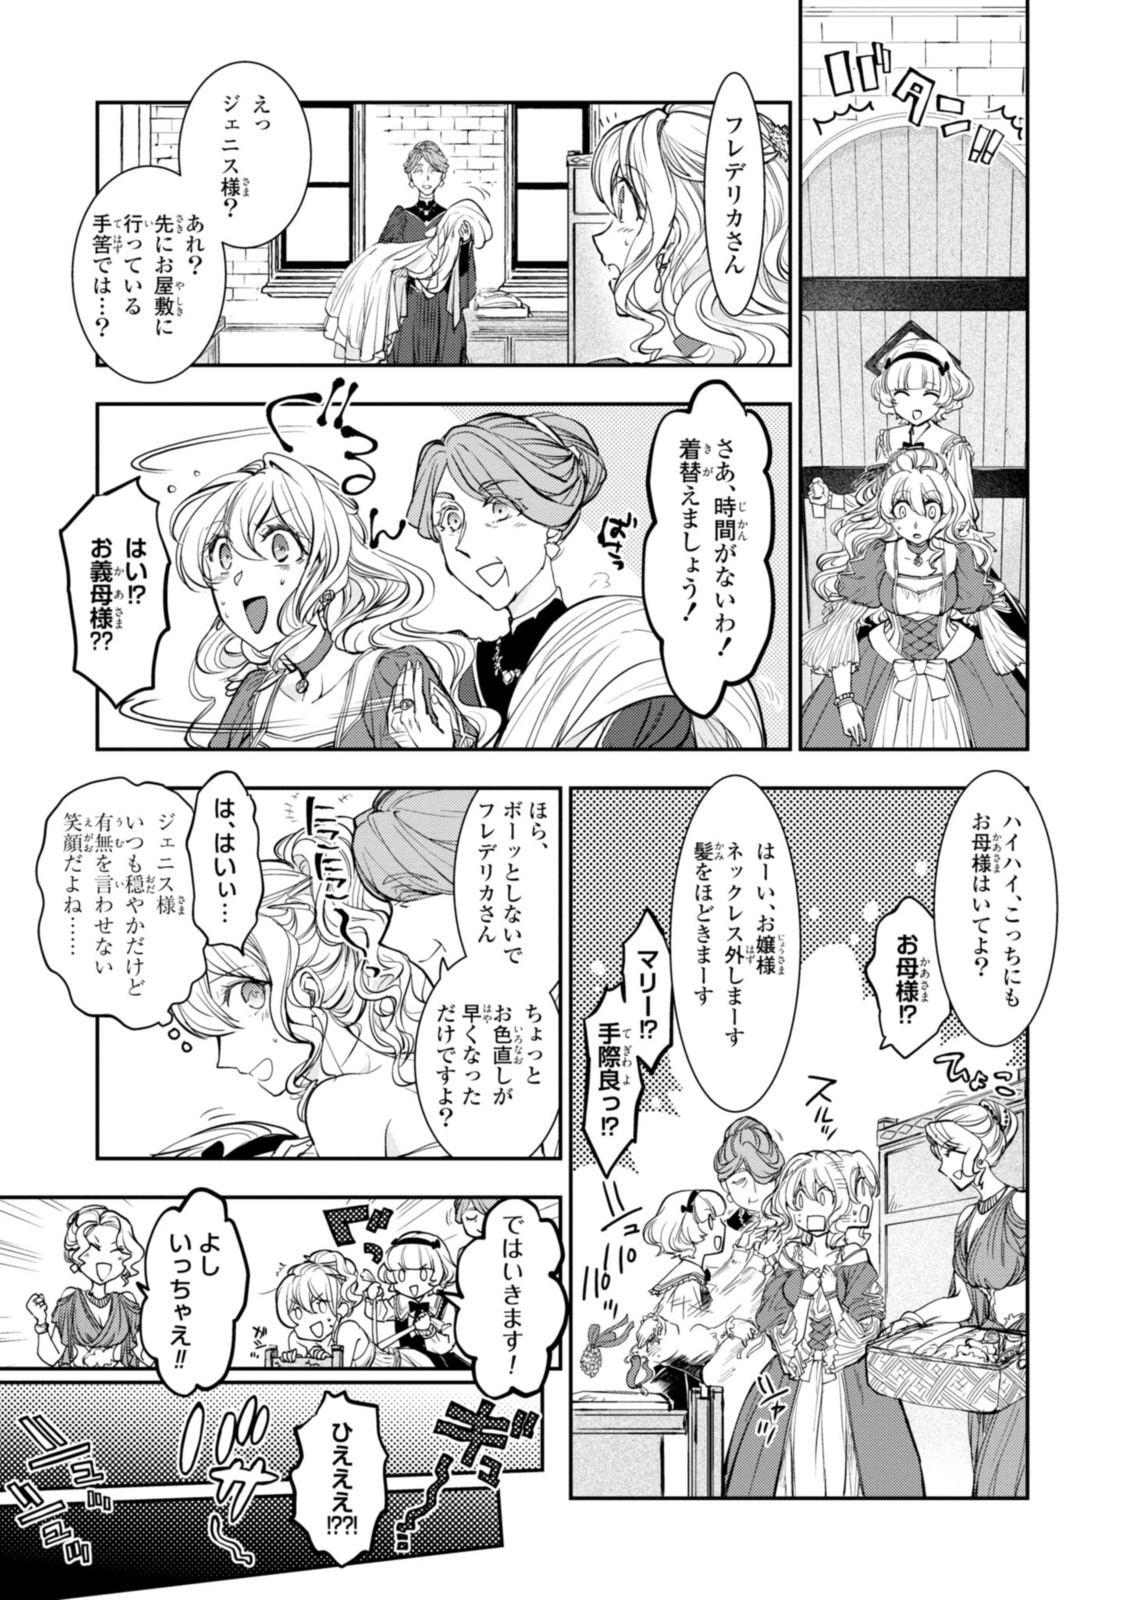 Sakkon no Cinderella wa Kutsu wo Otosanai. - Chapter 9.3 - Page 3